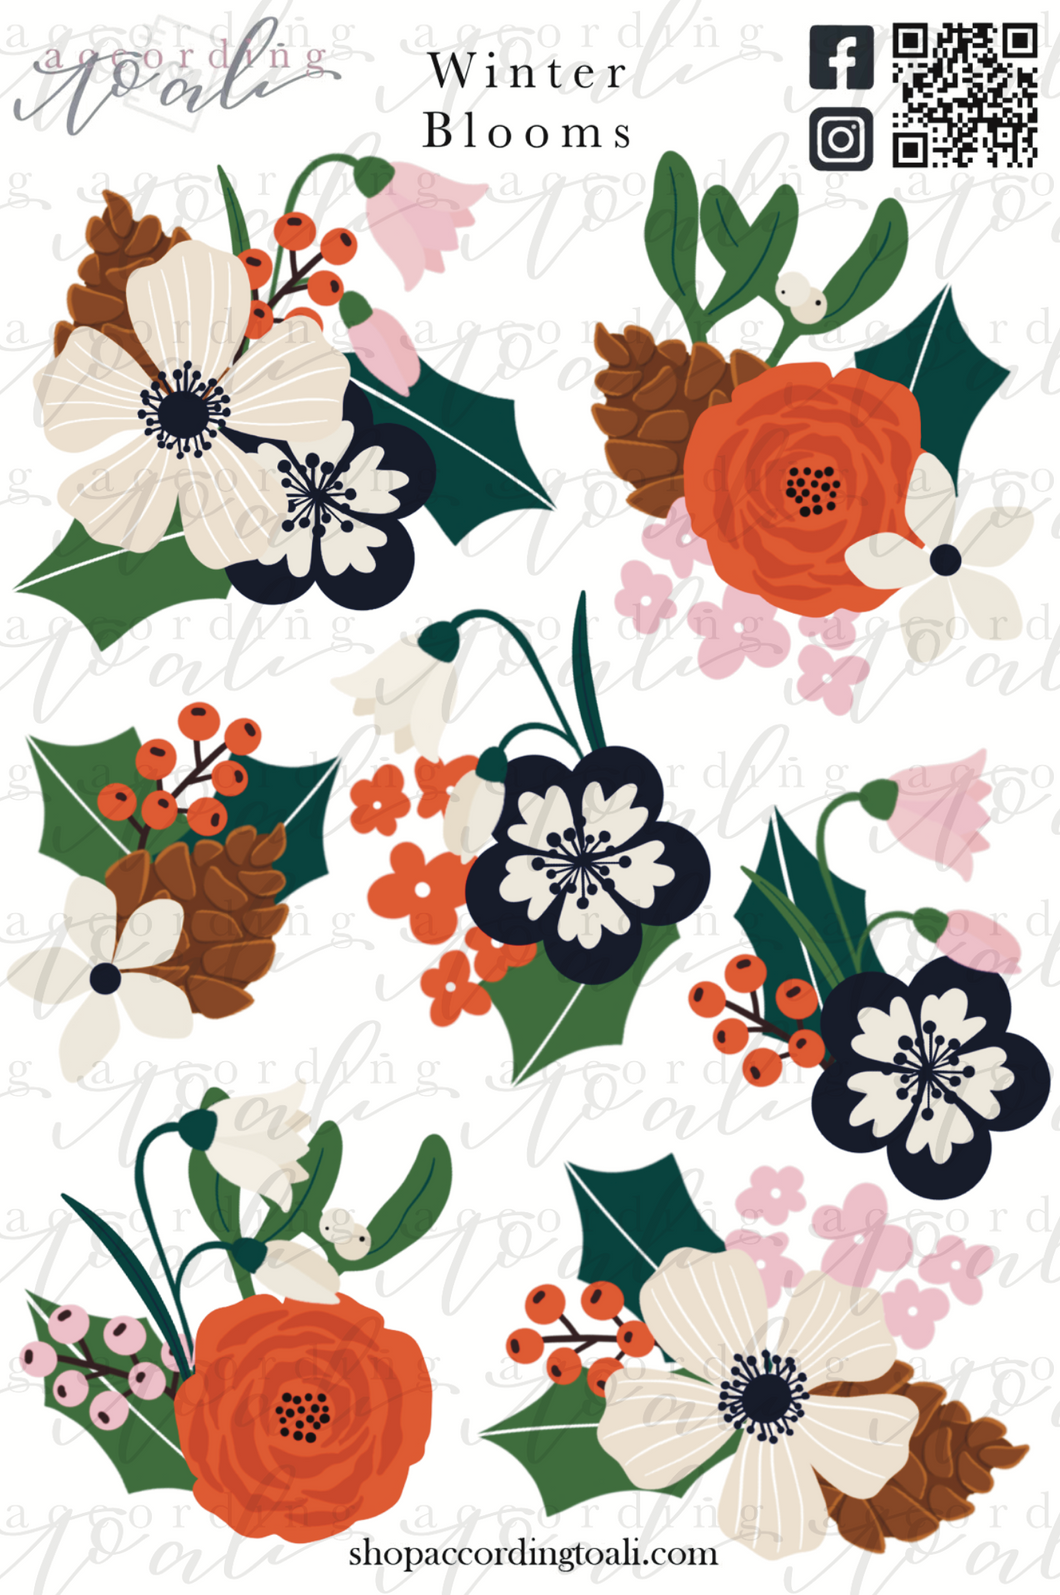 Winter Blooms Sticker Sheet